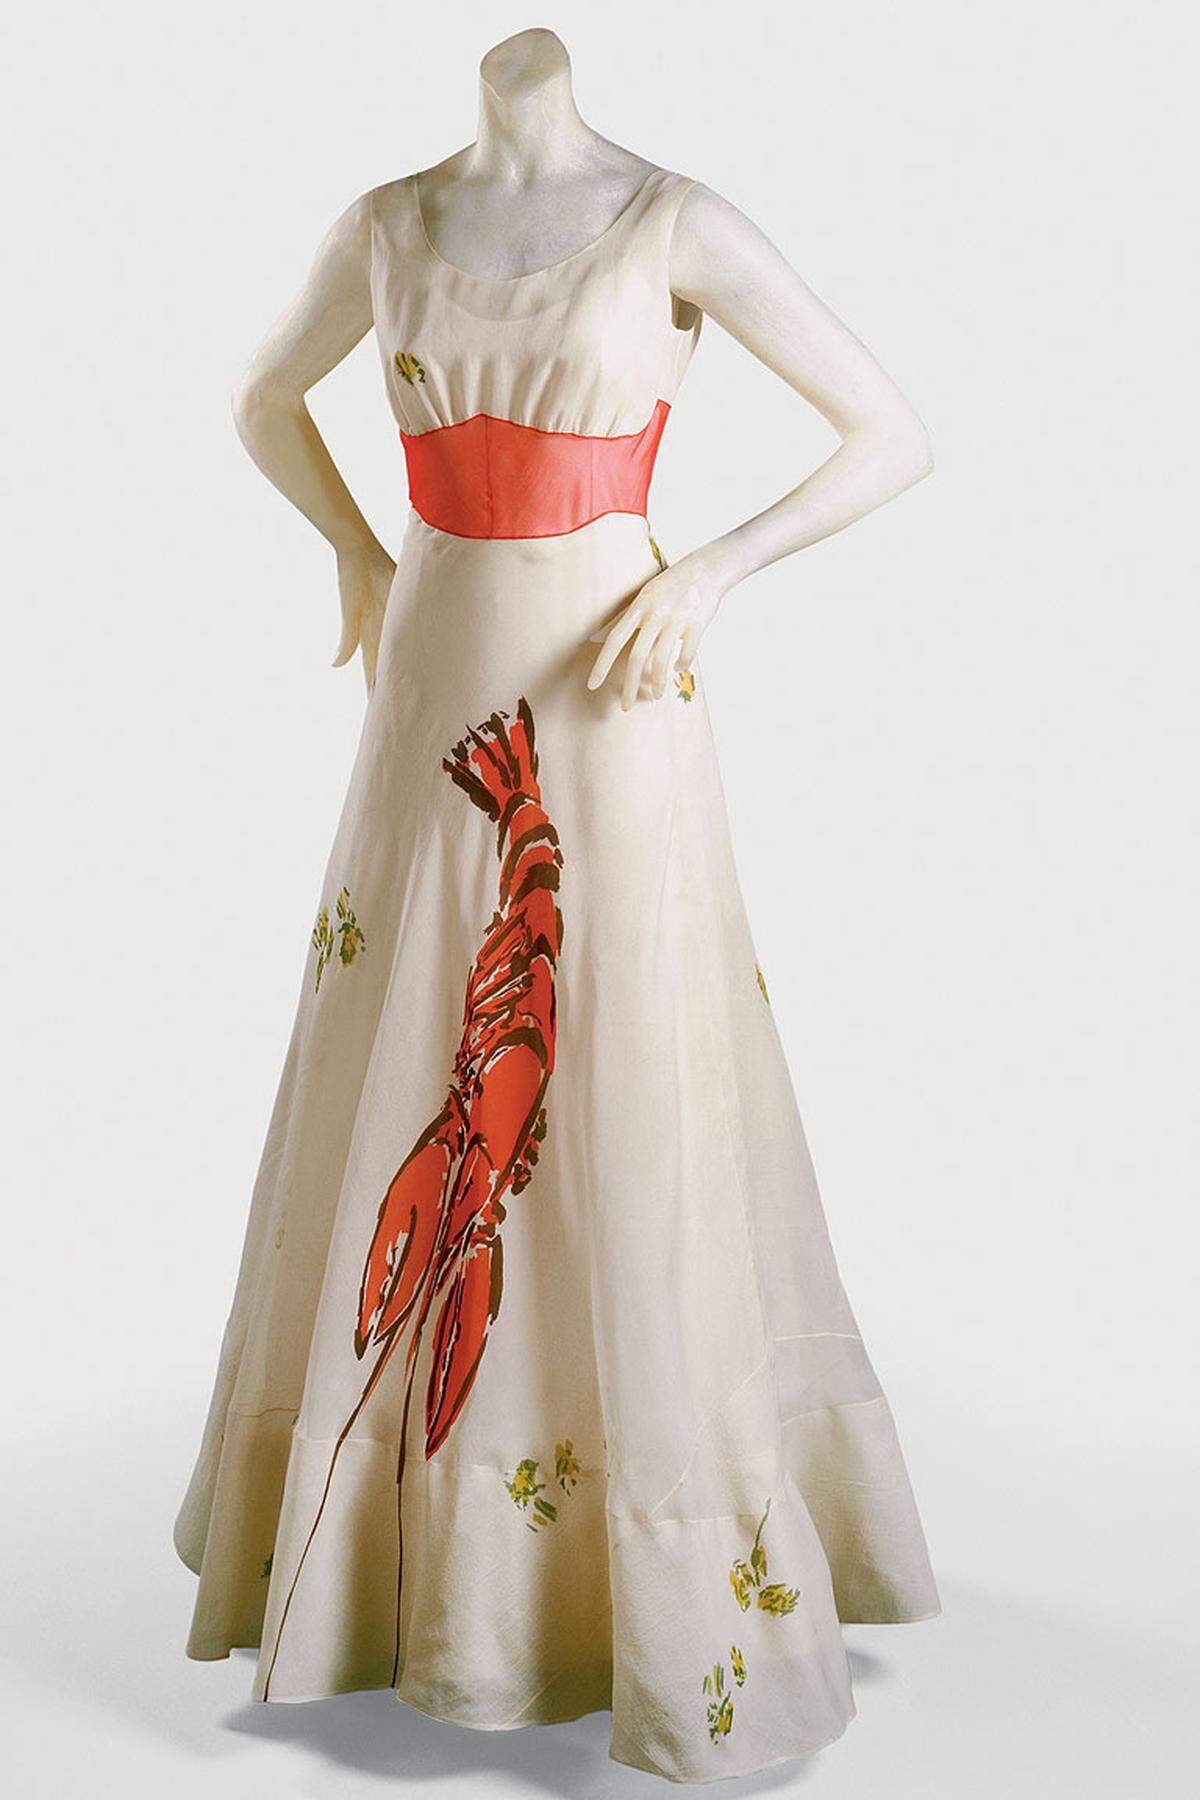 Da sind die Surrealisten, die mit Modeschöpfern eng zusammenarbeiteten - ausgestellt ist das "Hummerkleid" von Elsa Schiaparelli, das sich direkt auf Dalis "Hummertelefon" bezieht.